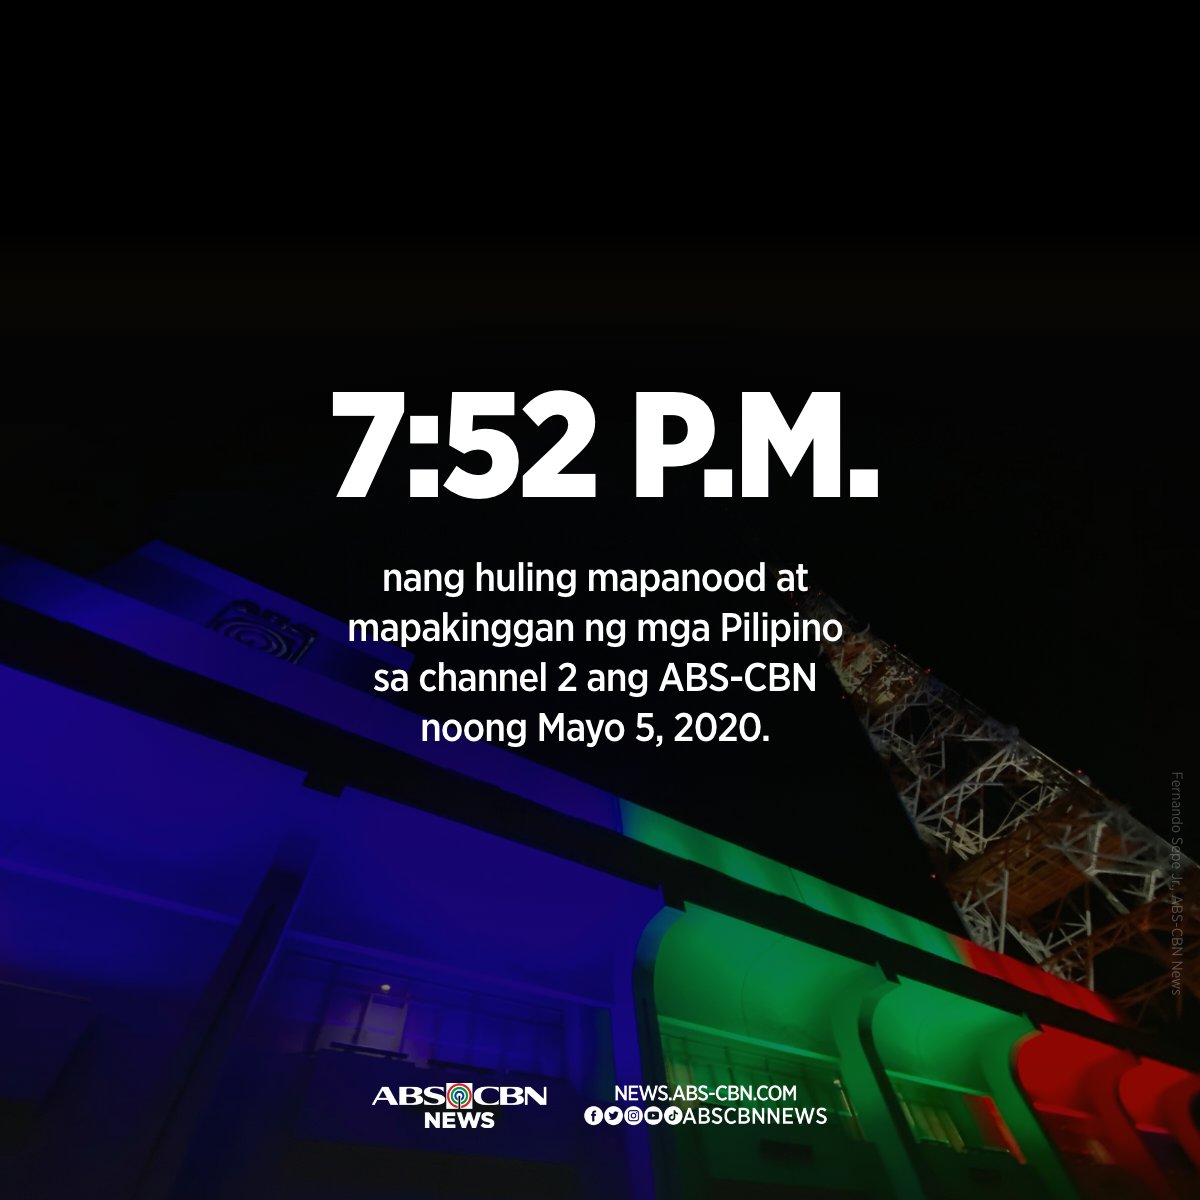 Pagsapit ng 7:52 p.m. noong Mayo 5, 2020, tumigil sa pag-ere ang ABS-CBN Channel 2 alinsunod sa kautusan ng NTC.

Pero hindi tayo tumigil sa paghahanap ng mga paraan upang makapagserbisyo sa mga Pilipino saan man sa mundo. #ABSCBNShutdown